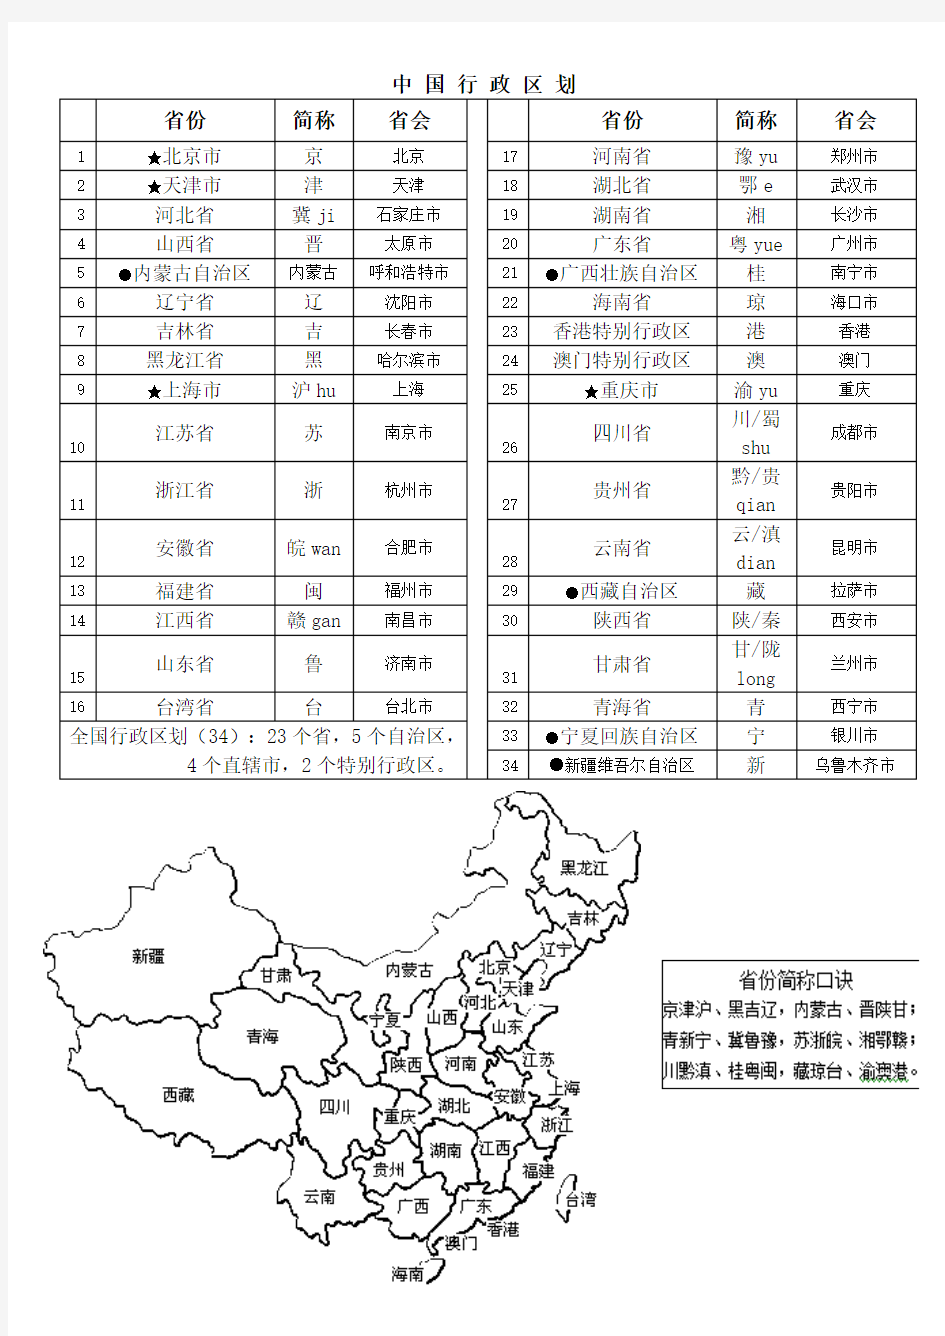 4、中国的省级行政区、简称、省会表格